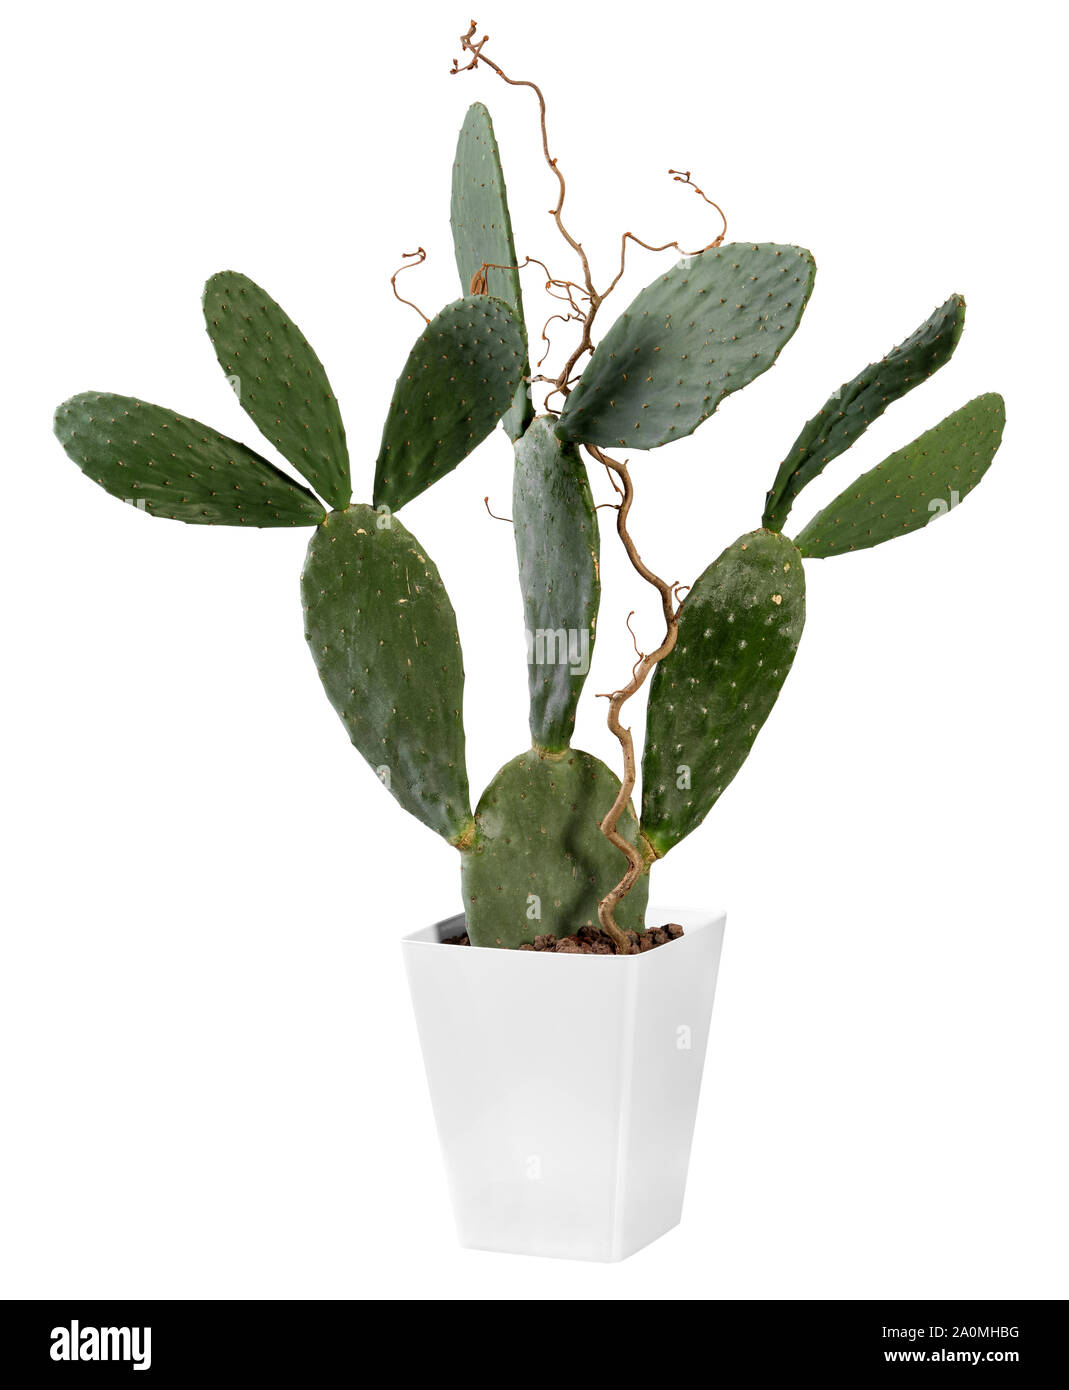 Cactus Opuntia plante poussant dans un récipient blanc rectangulaire isolated on white Banque D'Images